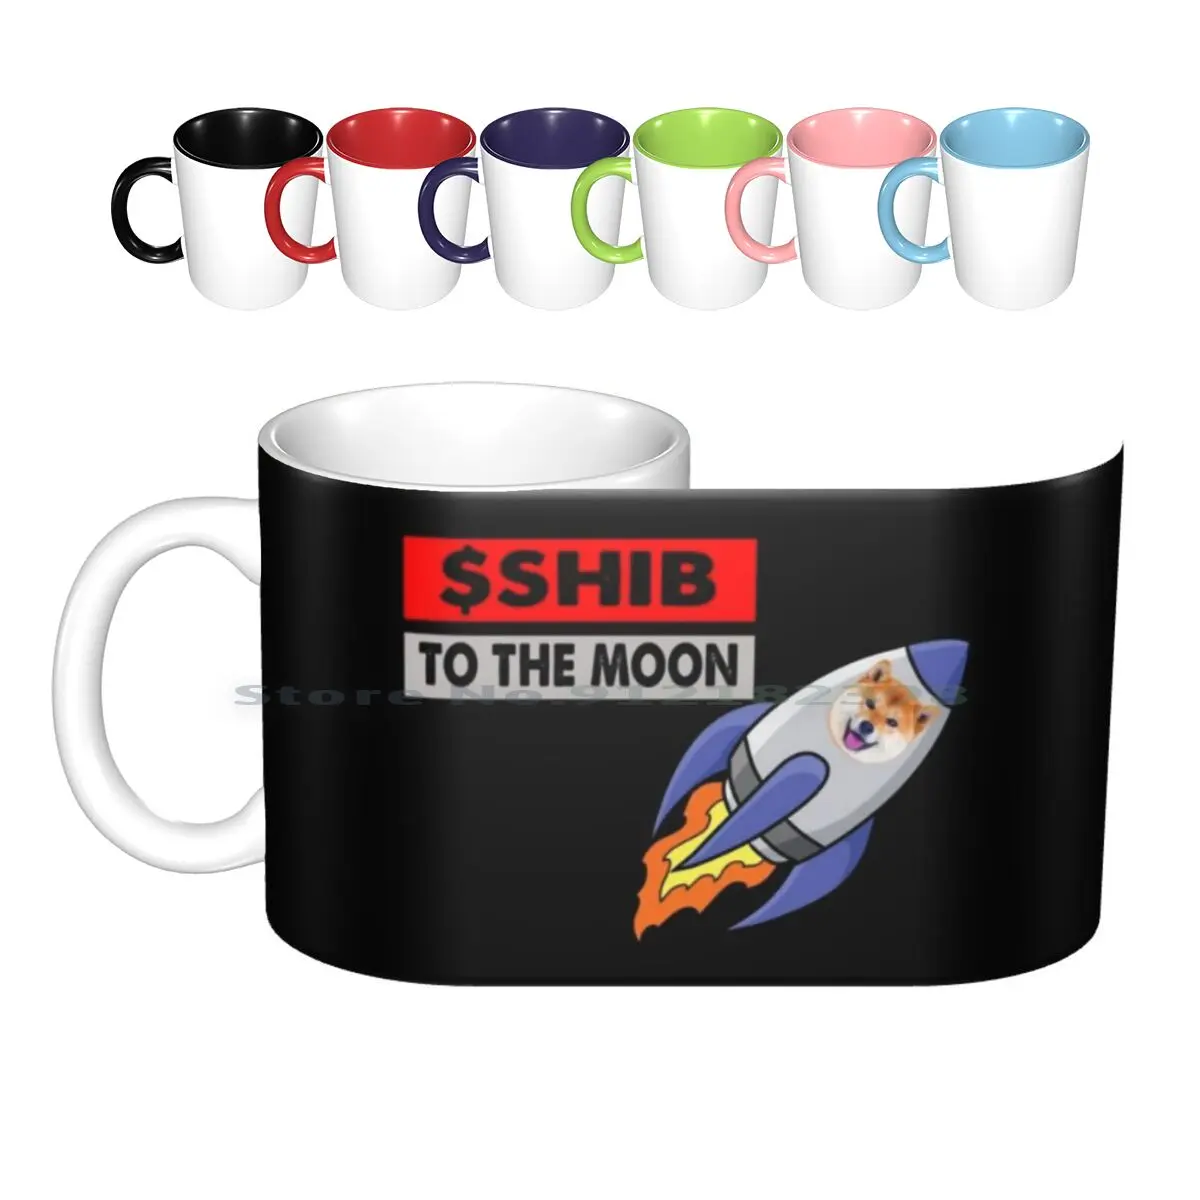 

Керамические кружки Rocket Shiba Coin $ shib для Луны, Шиба-ину, кофейные чашки, кружка для молока, чая, ракета, Сиба-монет, шиб до Луны